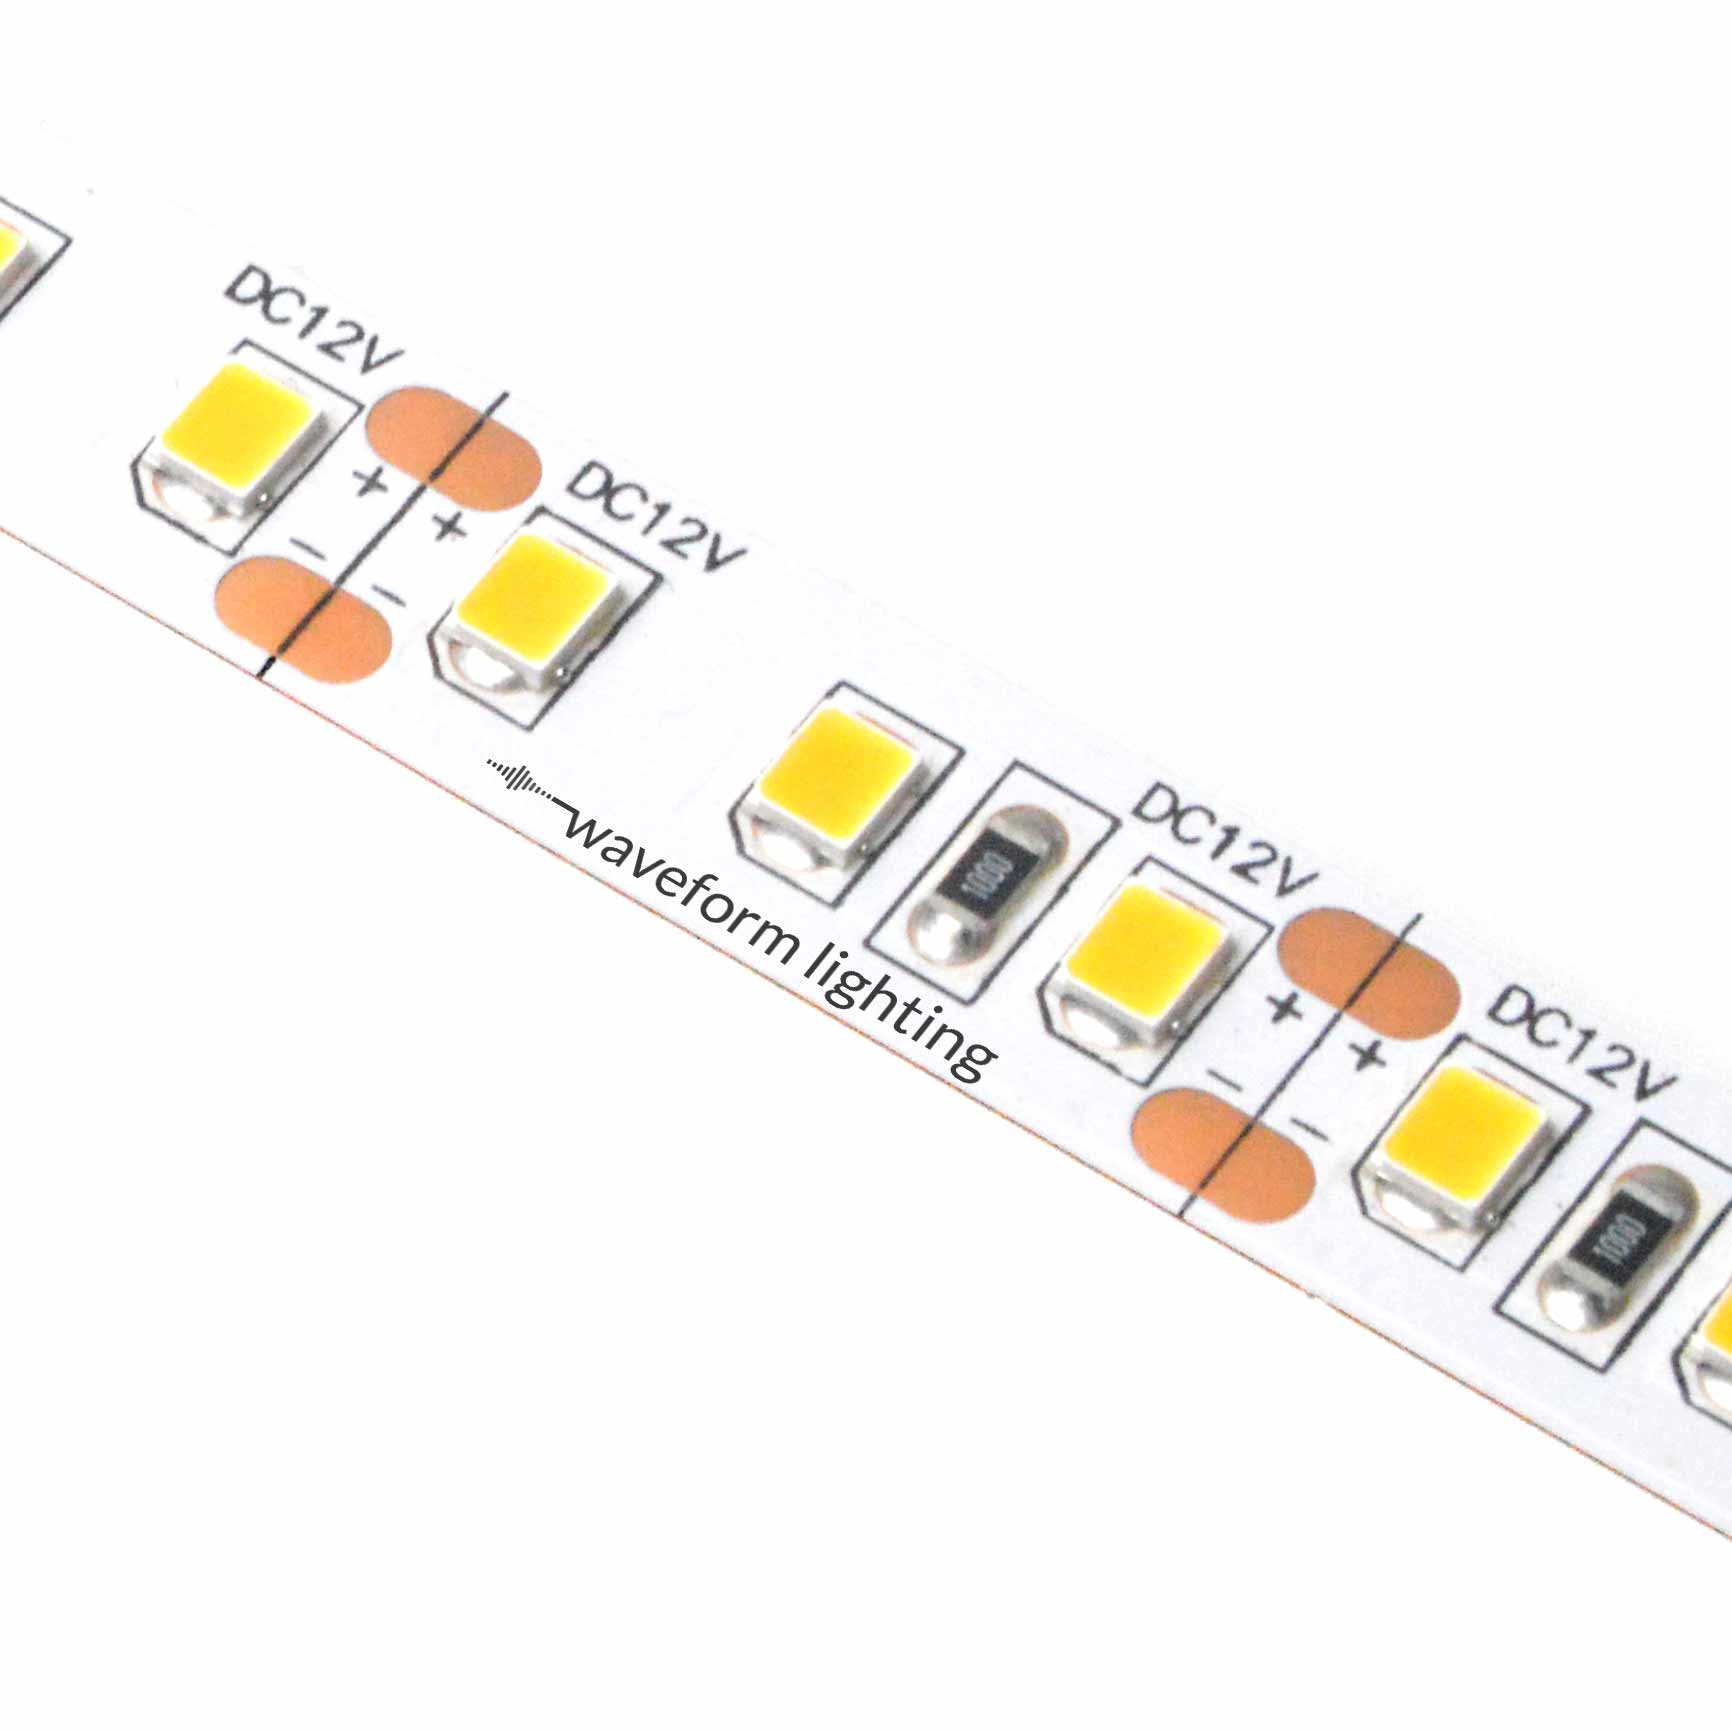 realUV™ LED Strip Lights – Waveform Lighting